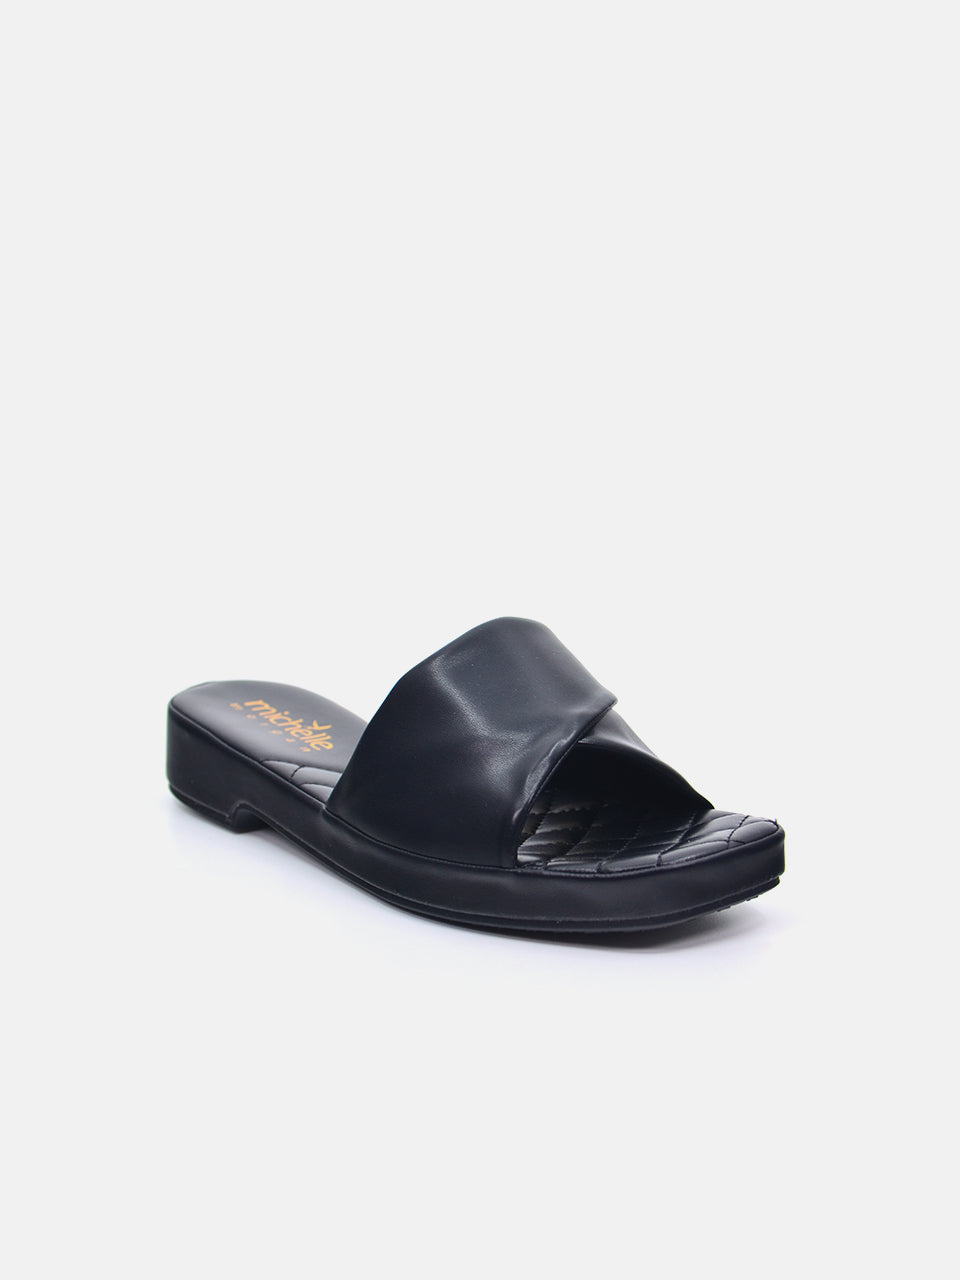 Michelle Morgan 114ZD612 Women's Flat Sandals #color_Black